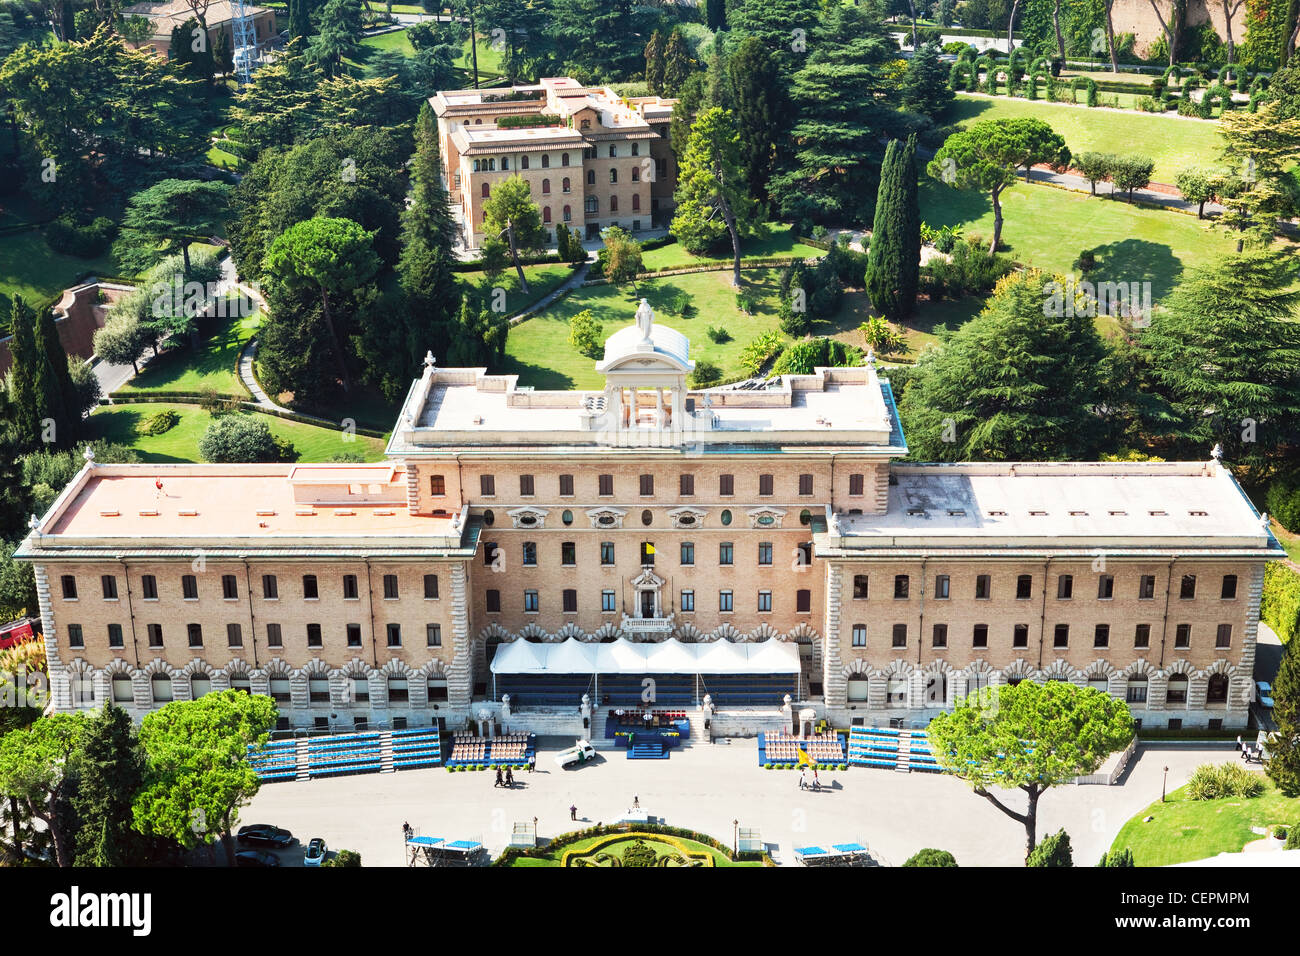 La résidence du Pape (Palace Governatorato) dans les jardins du Vatican, Rome, Italie Banque D'Images